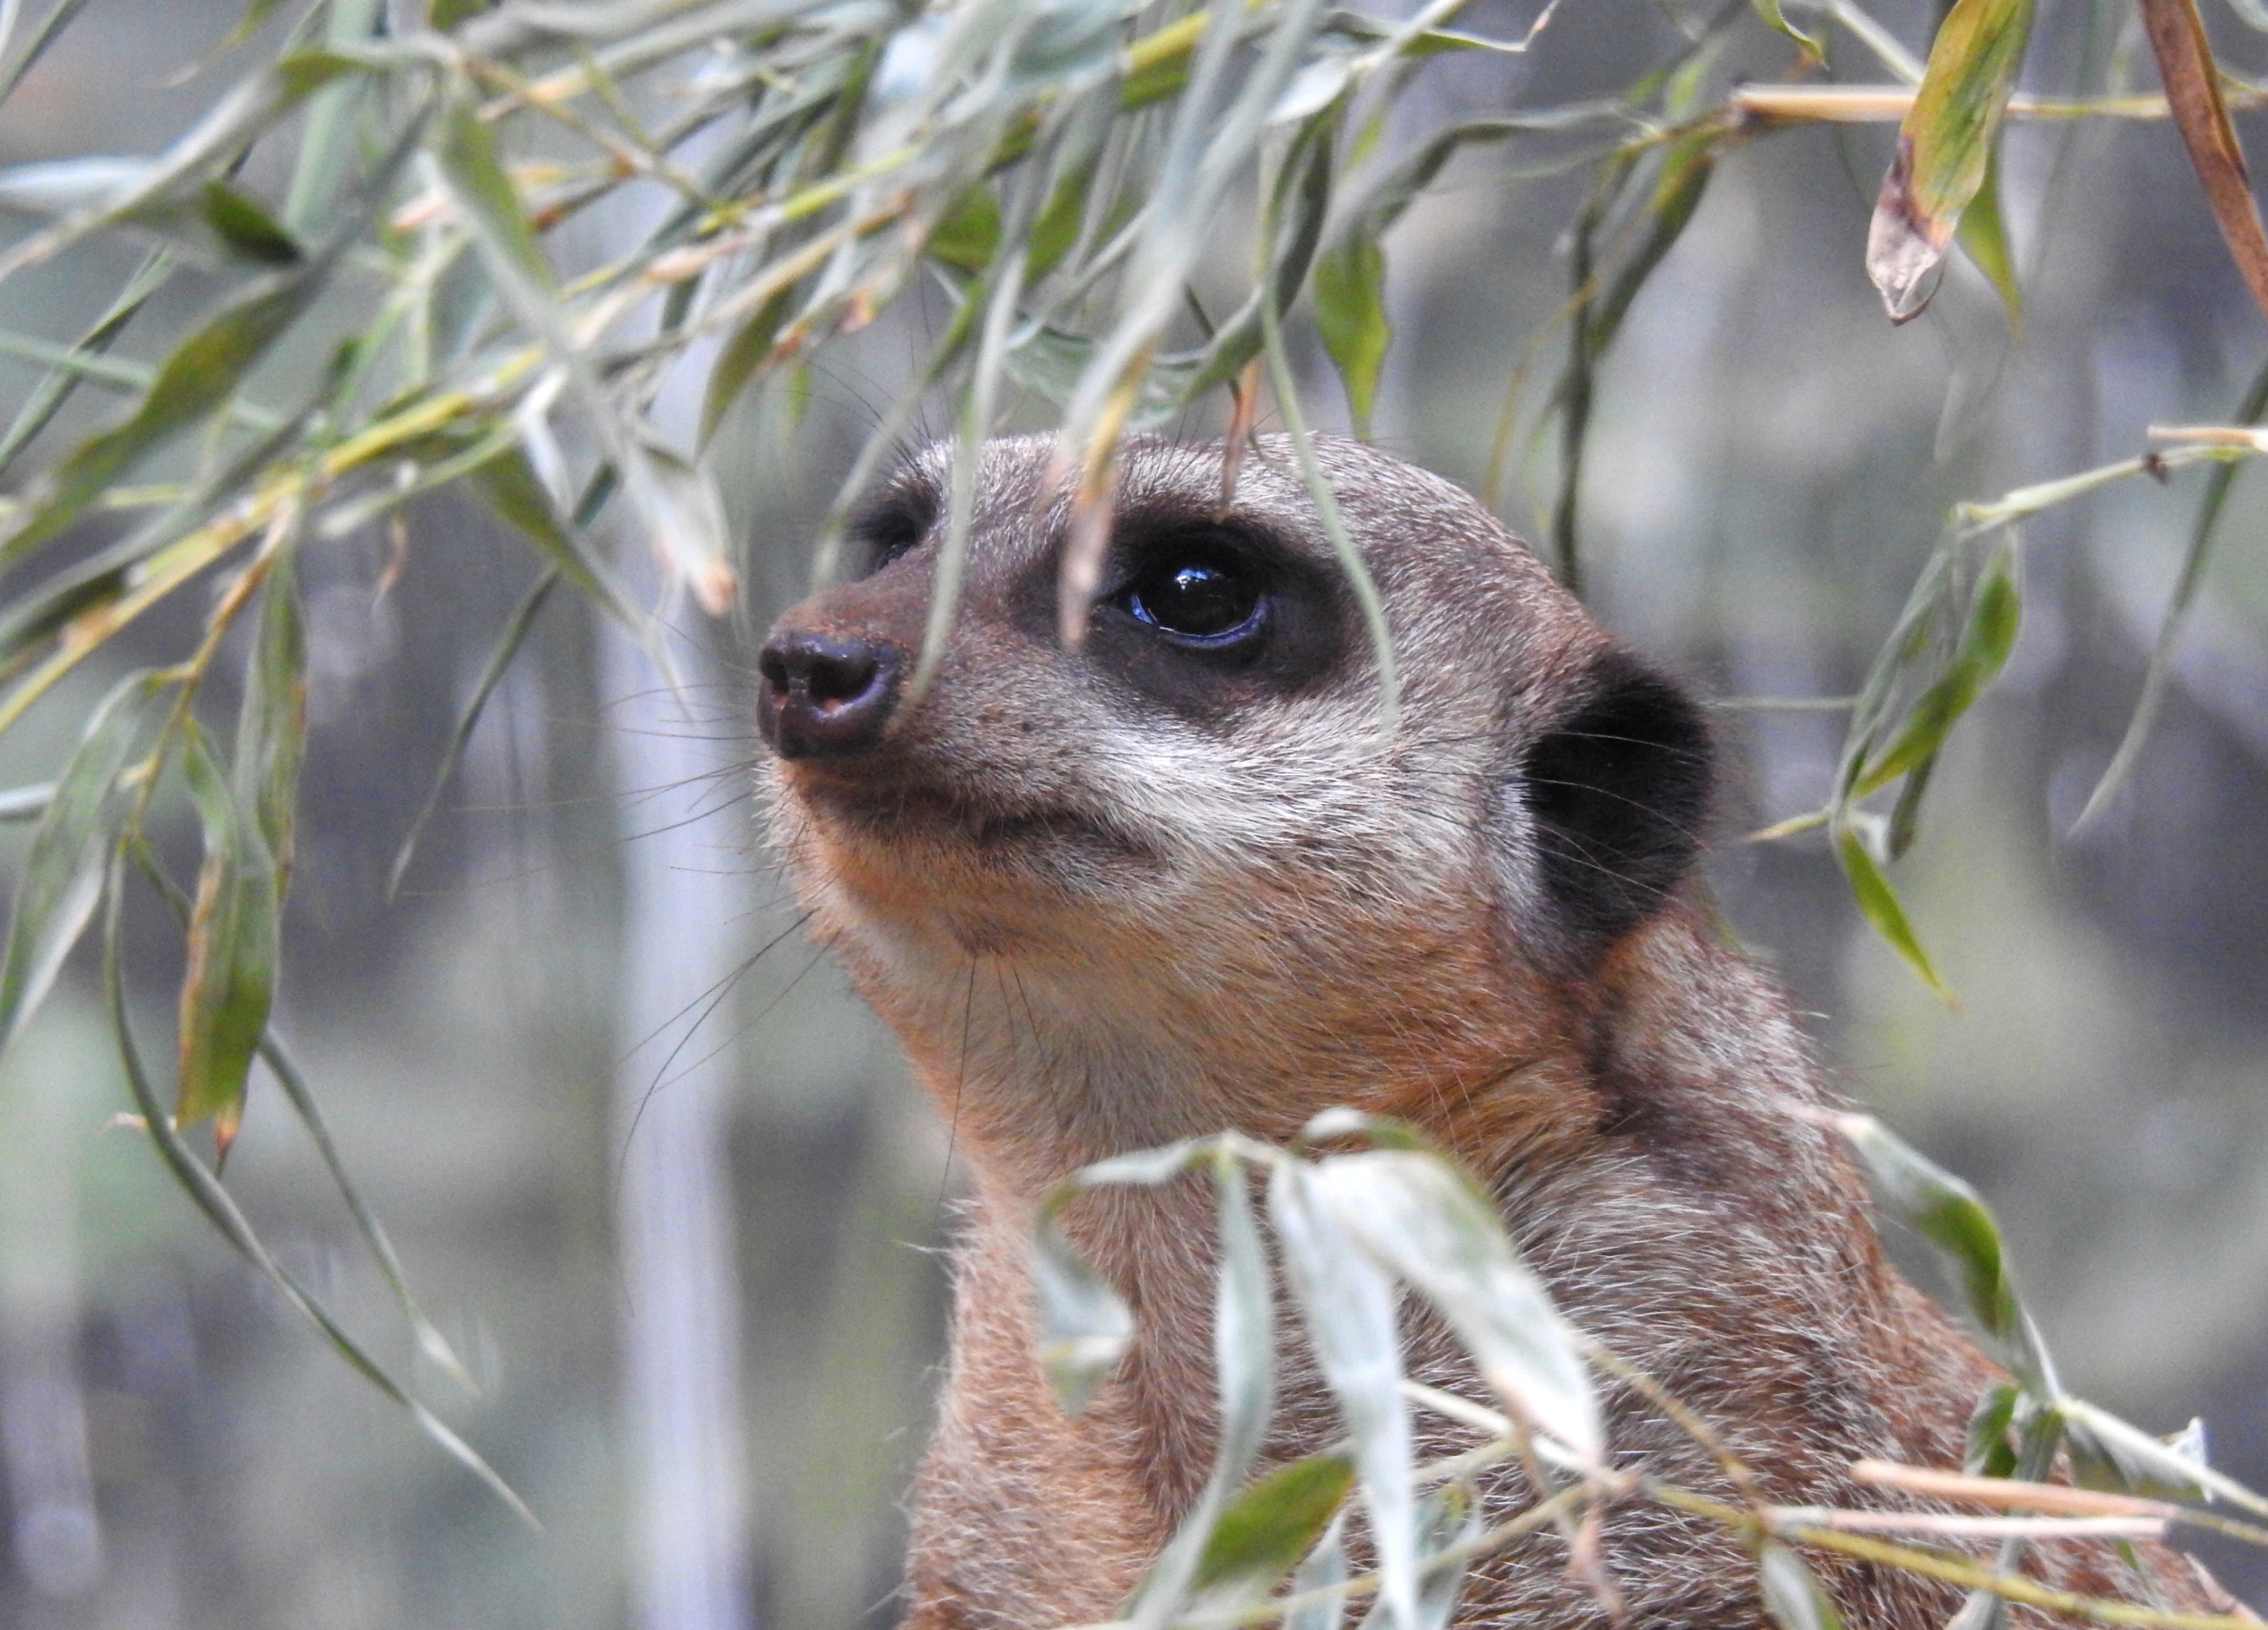 The ever-watchful meerkat